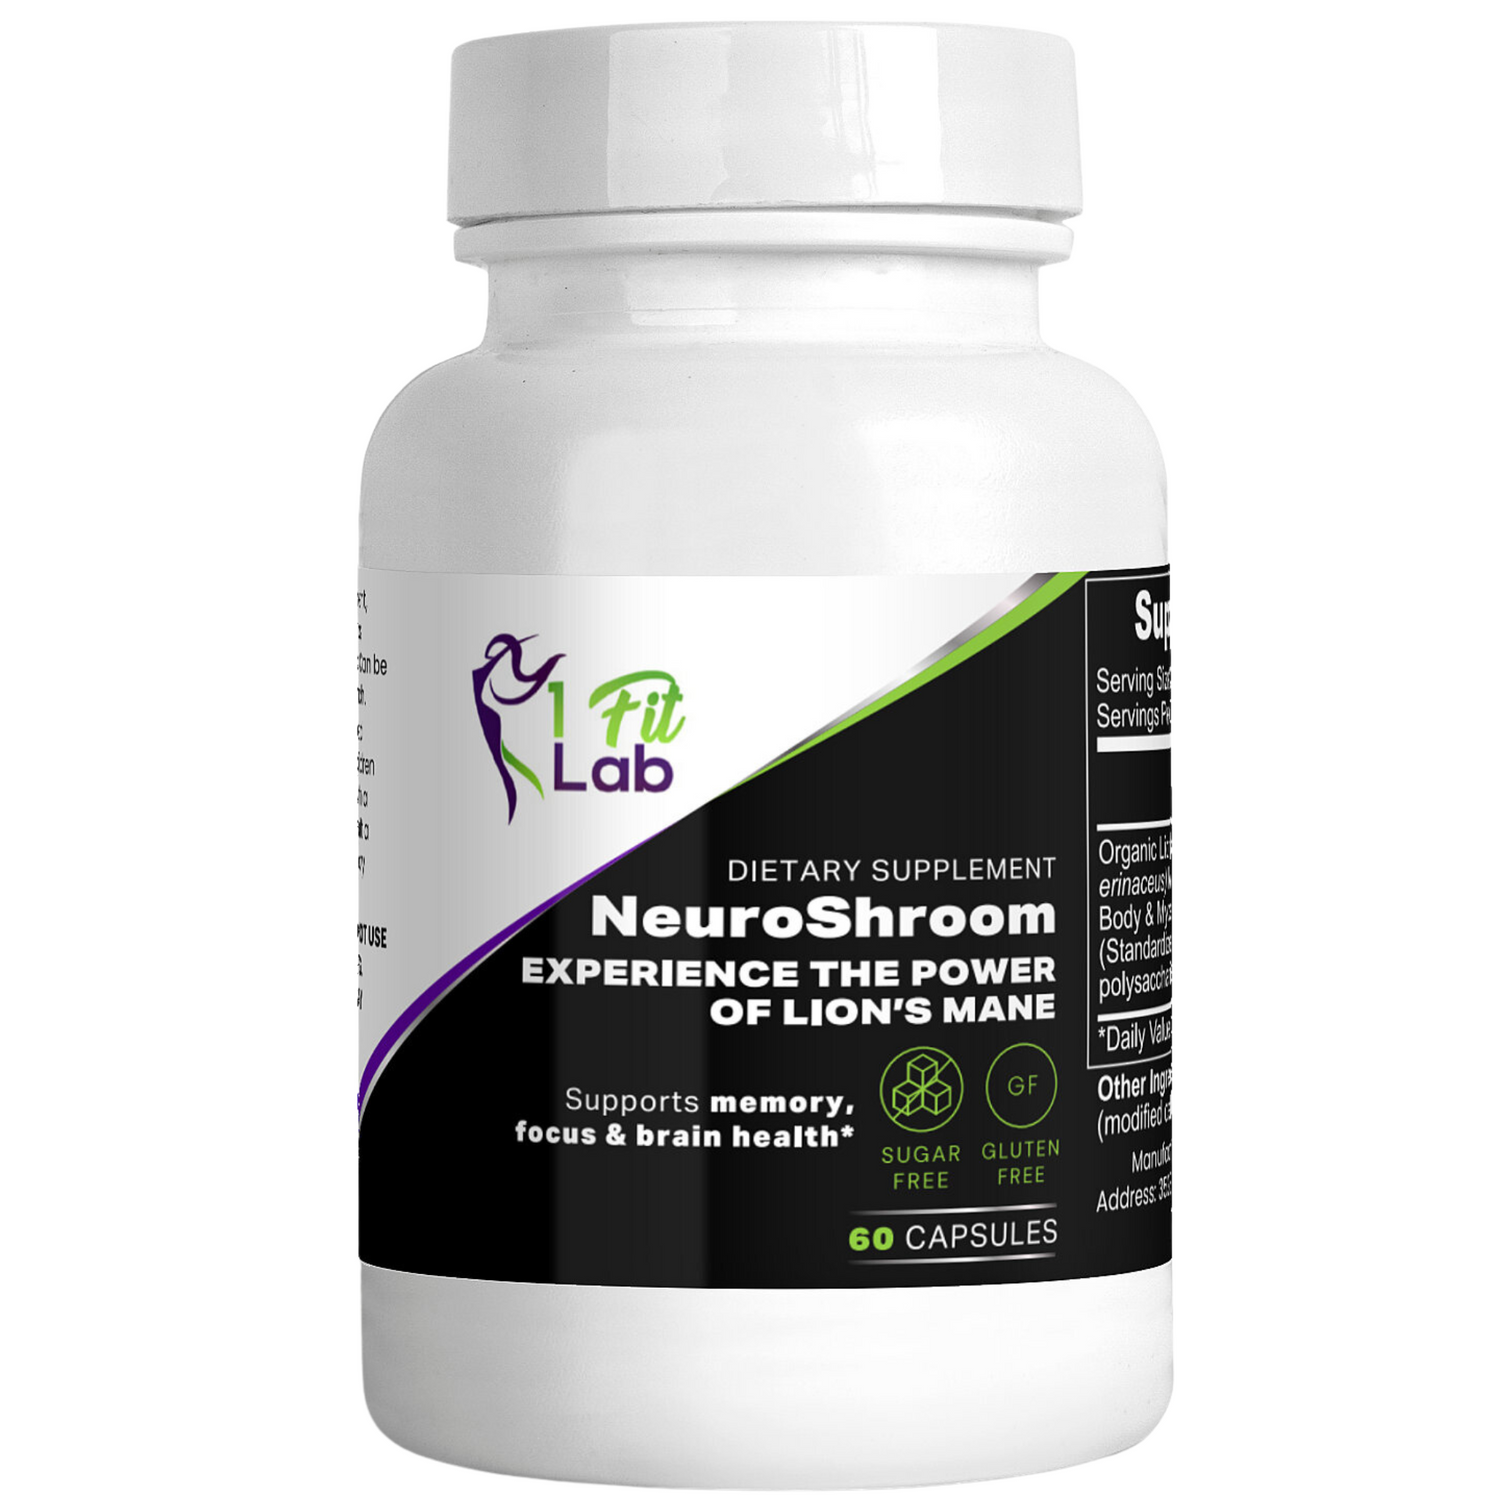 Bottle of NeuroShroom Lion's Mane Mushroom Extract for cognitive support